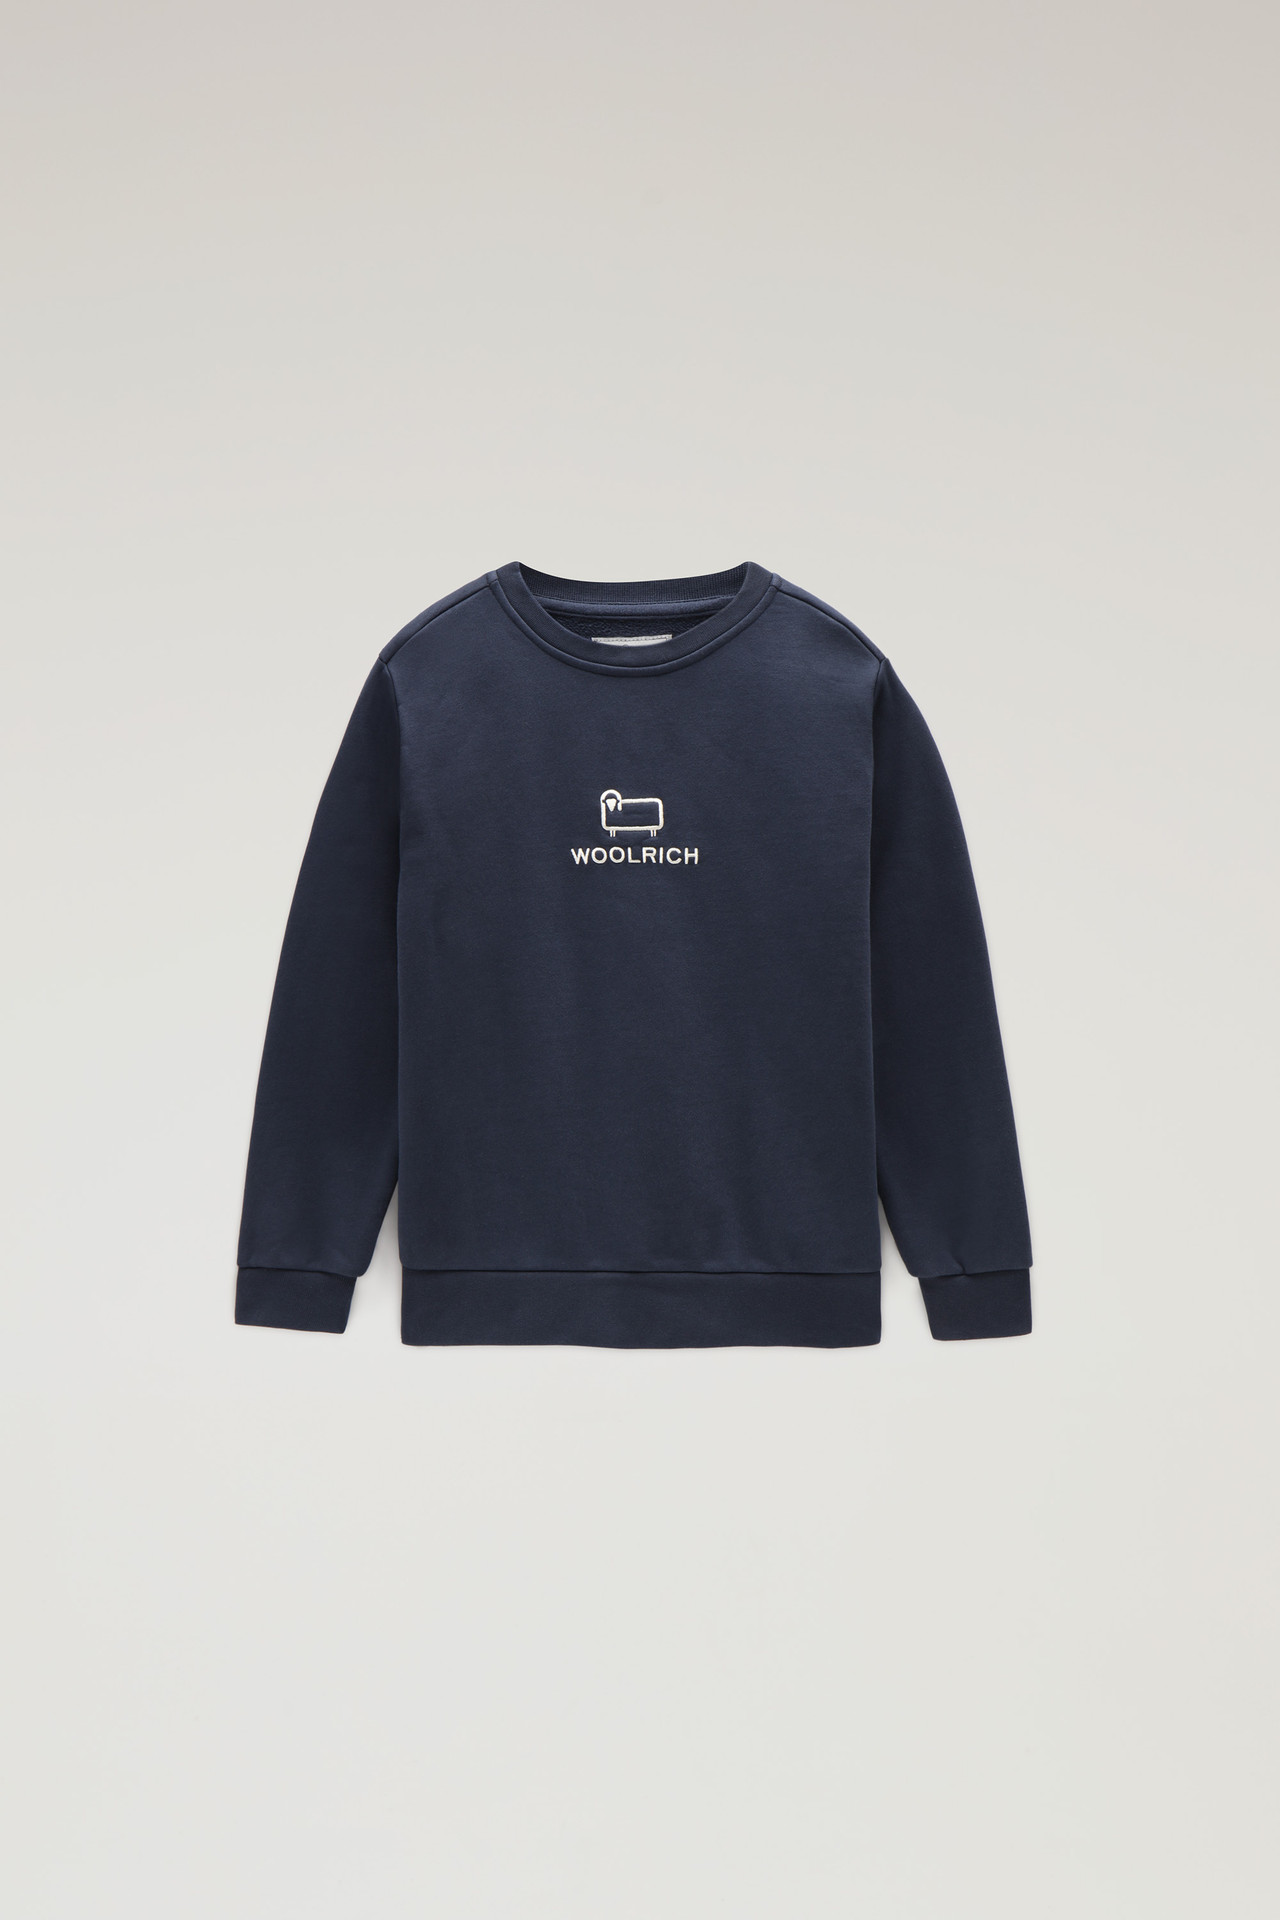 Woolrich Kids – Sweatshirt Logo – Blauw